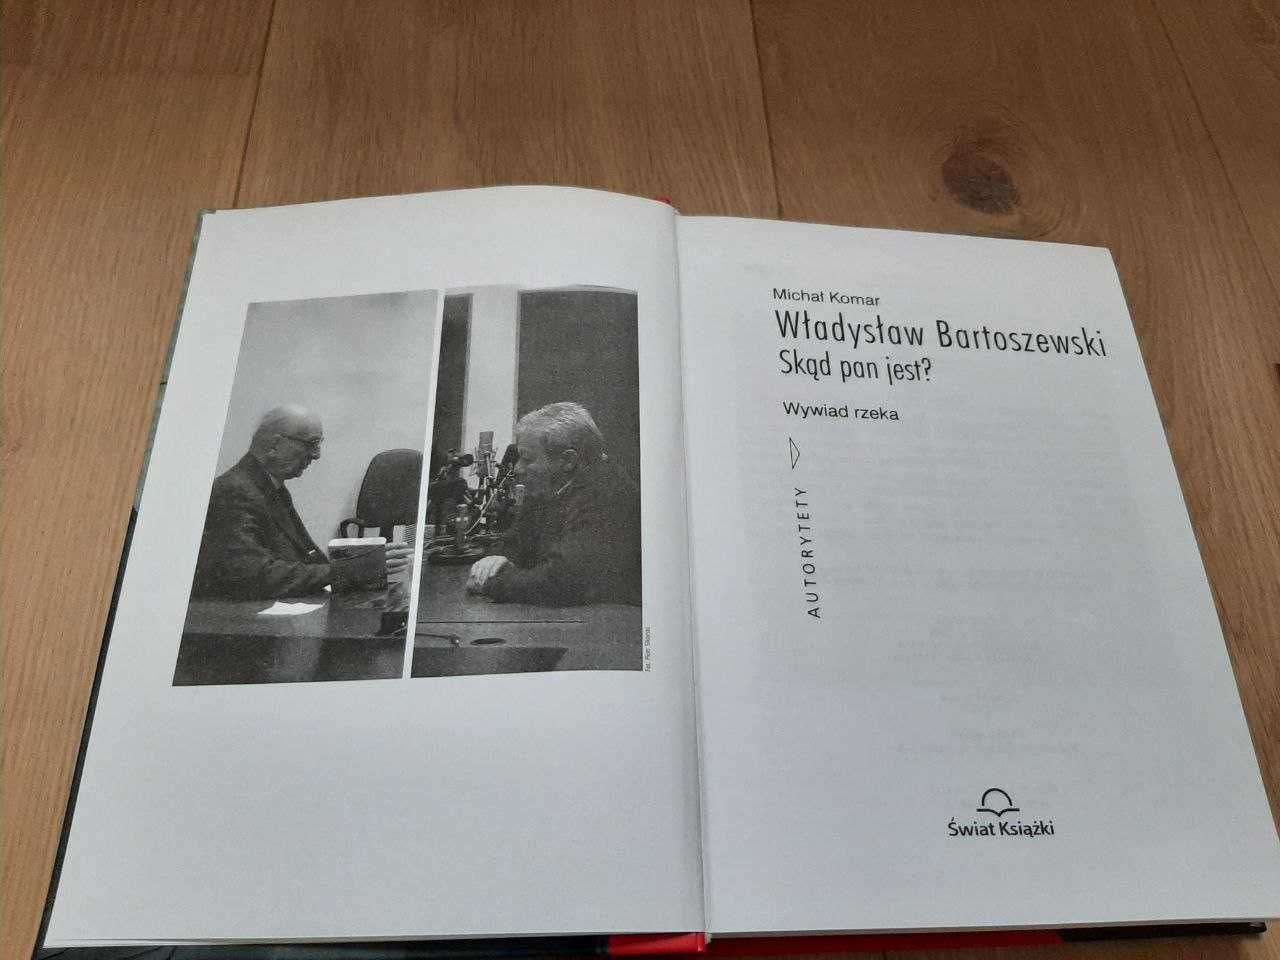 Władysław Bartoszewski Wywiad rzeka Michał Komar wraz z CD